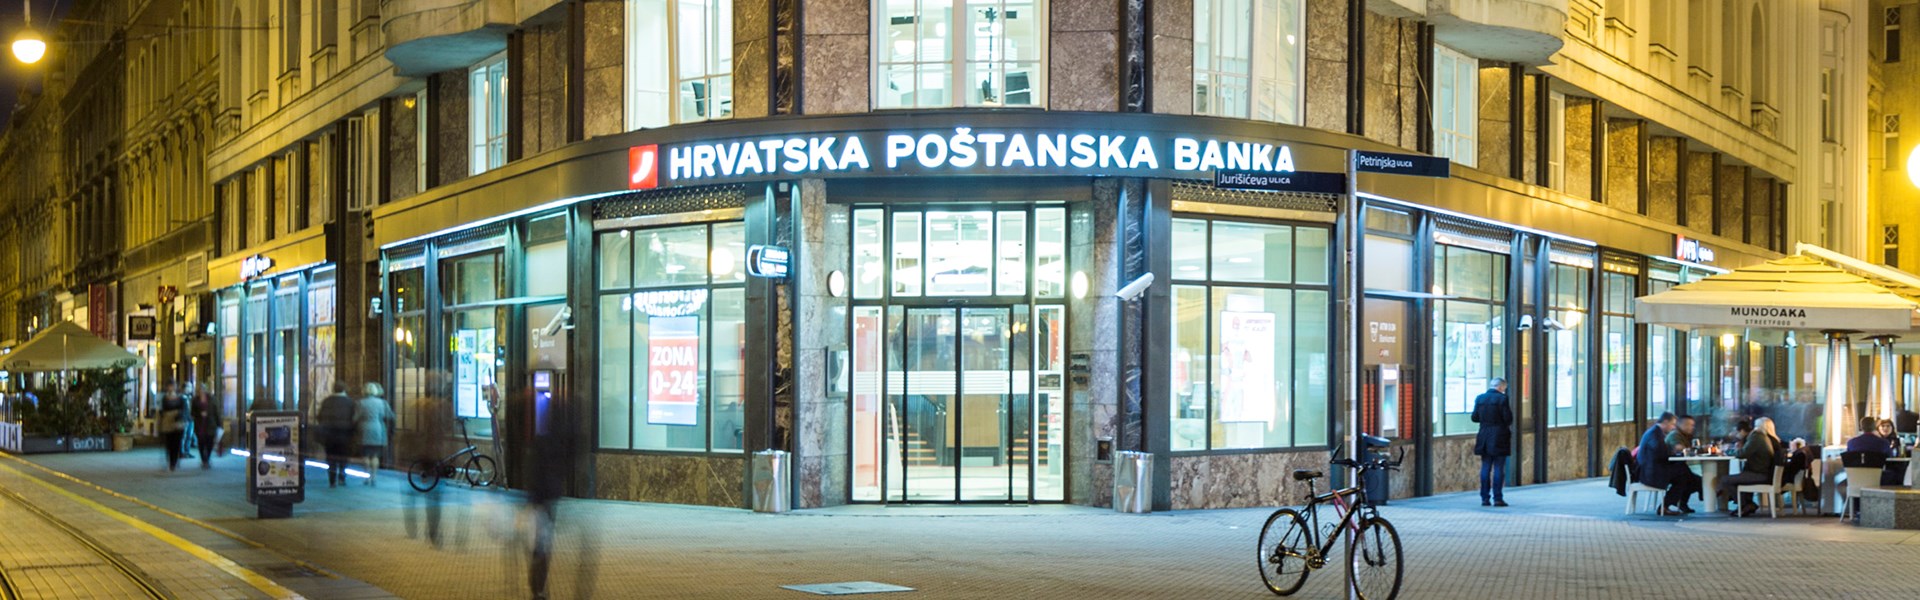 Banka valutu prodaje sek narona po cijeni hrvatska RJEČNIK FINANCIJSKIH